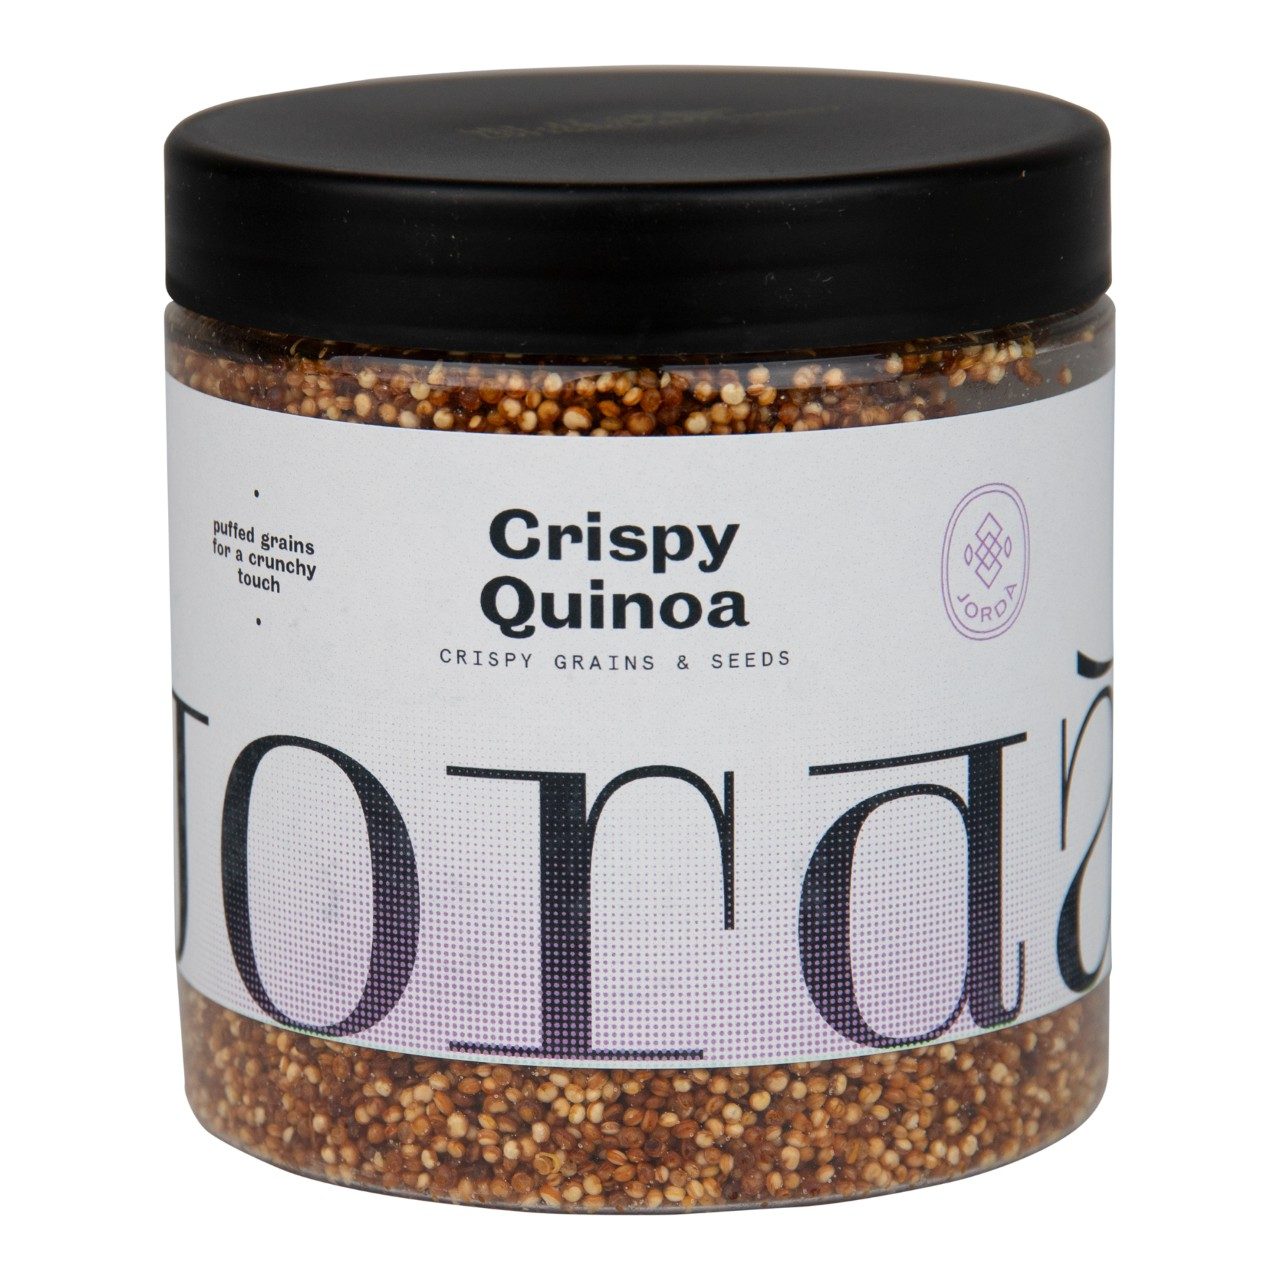 Quinoa crispy